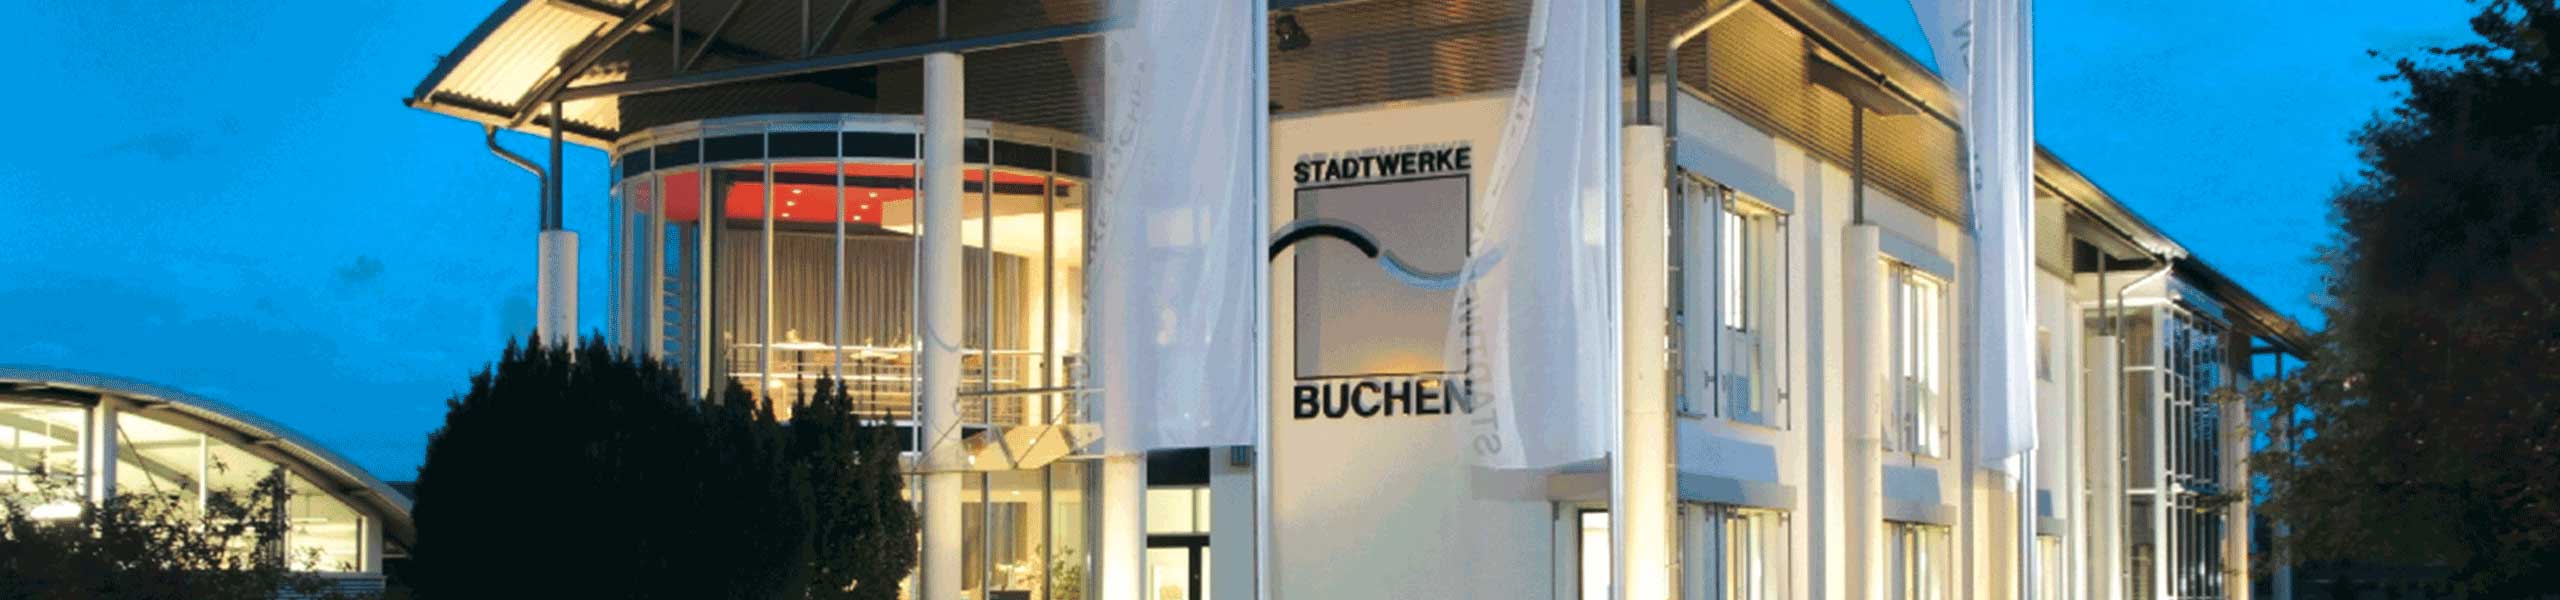 Stadtwerke Buchen GmbH & Co KG - BCHinfo